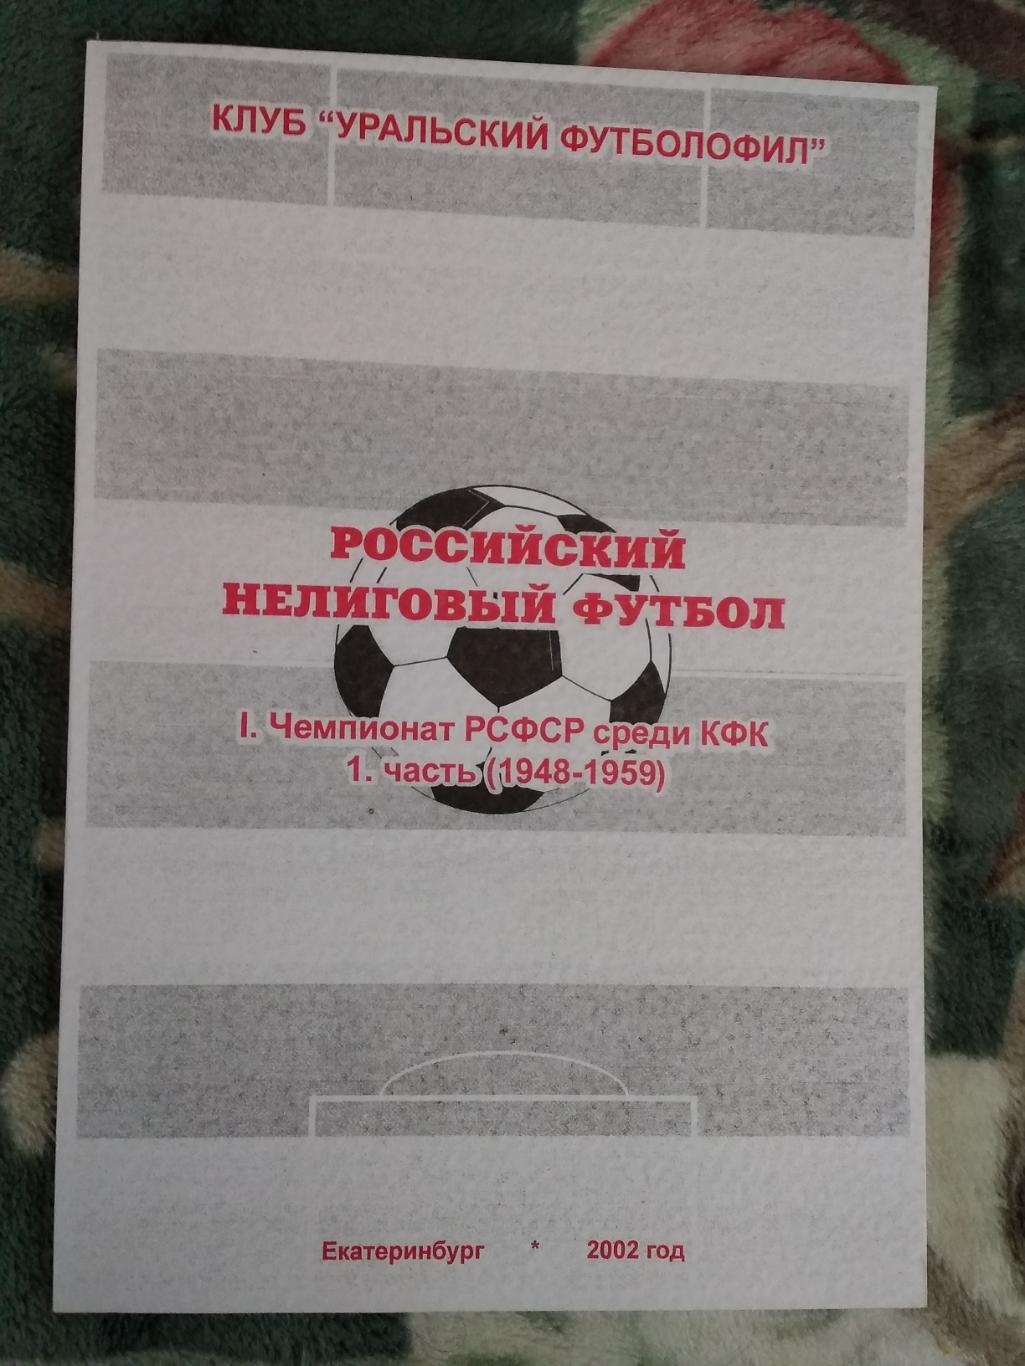 Российский нелиговый футбол.Чемпионат РСФСР (КФК) (1948-1959).Екатеринбург 2002.